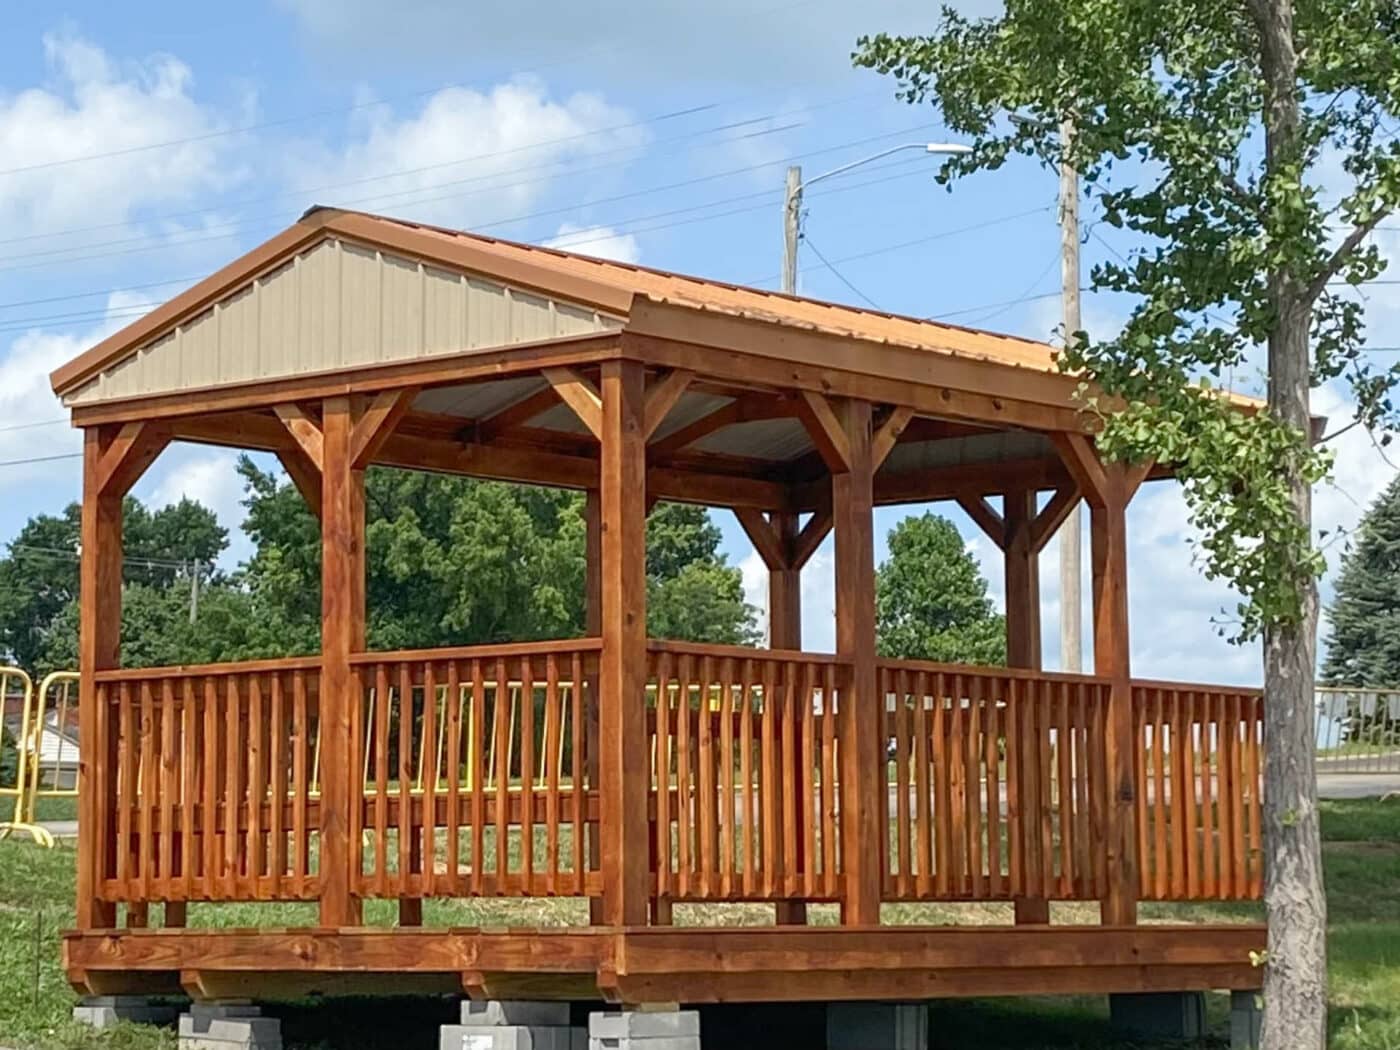 picnic retreat pavilion built by Premier Barns in Missouri